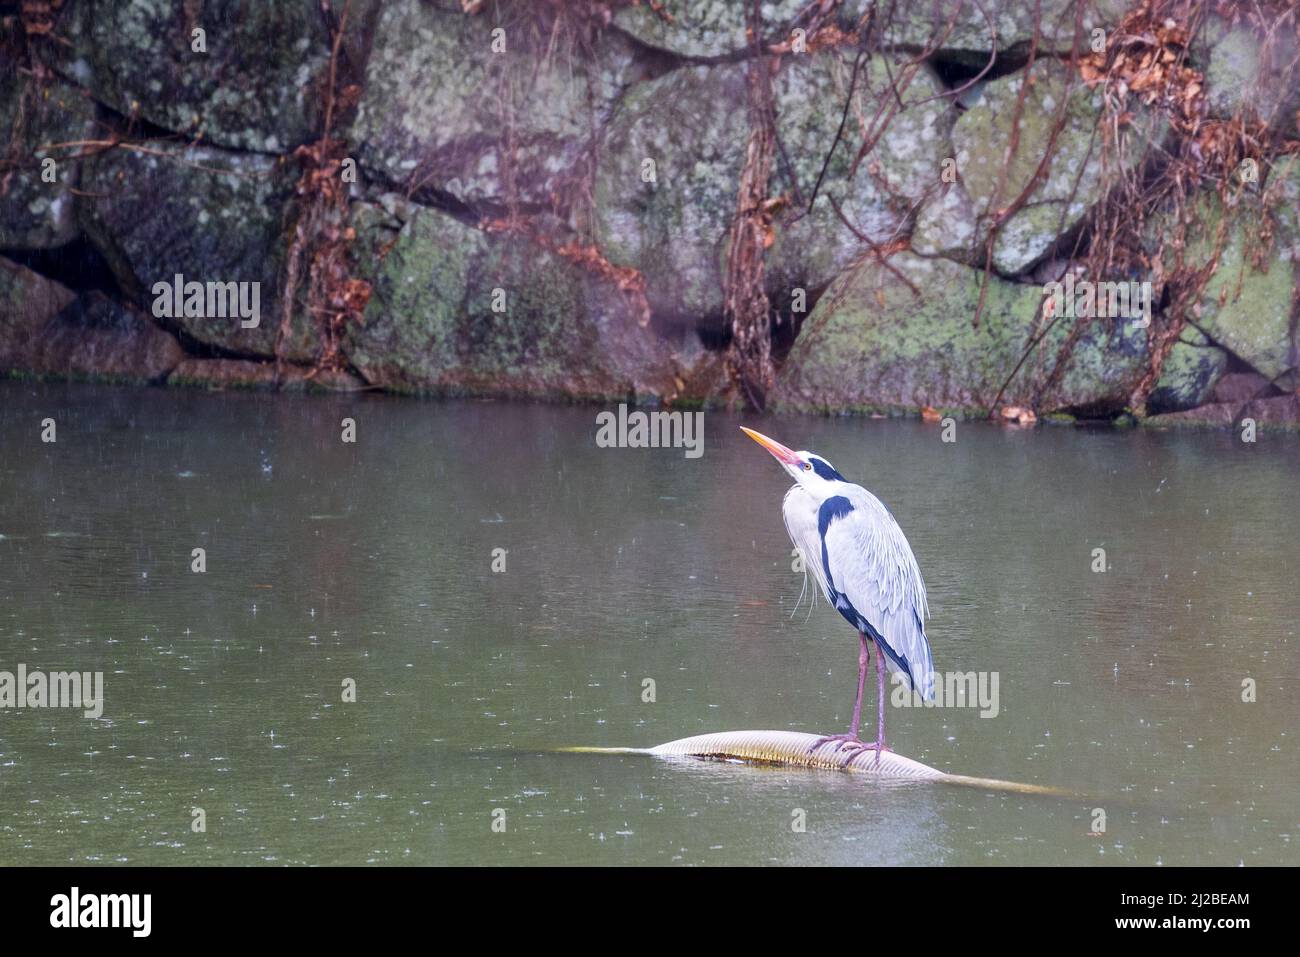 Japanese bird on water in rain Stock Photo